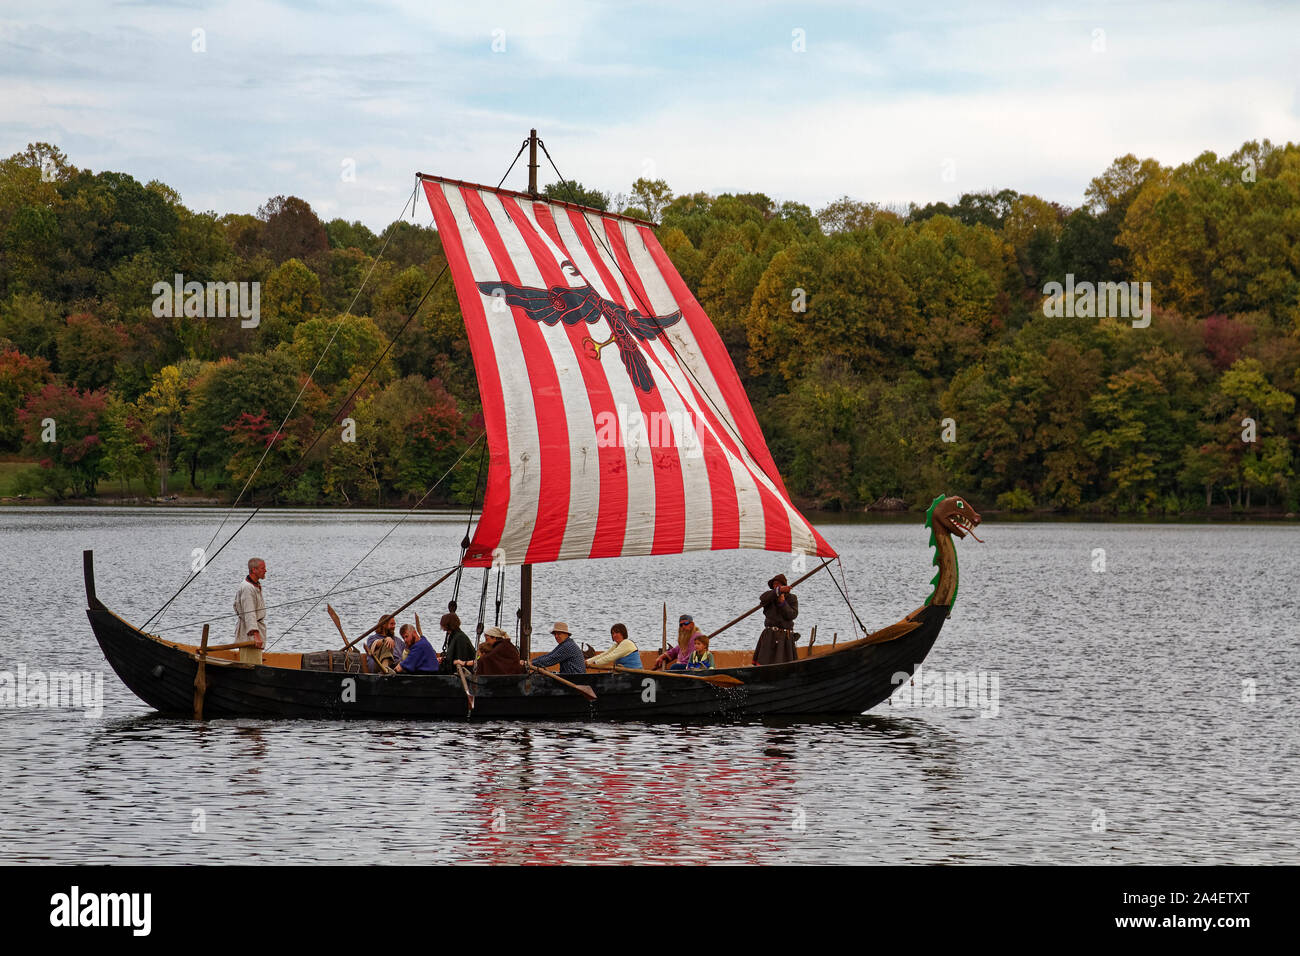 Viking Ship replica aviron ; costumes ; les gens, hommes, femmes, enfants, de longues rames ; rouge et blanc à rayures ; bois voile voile ; proposition, Marsh Creek State Park;g Banque D'Images